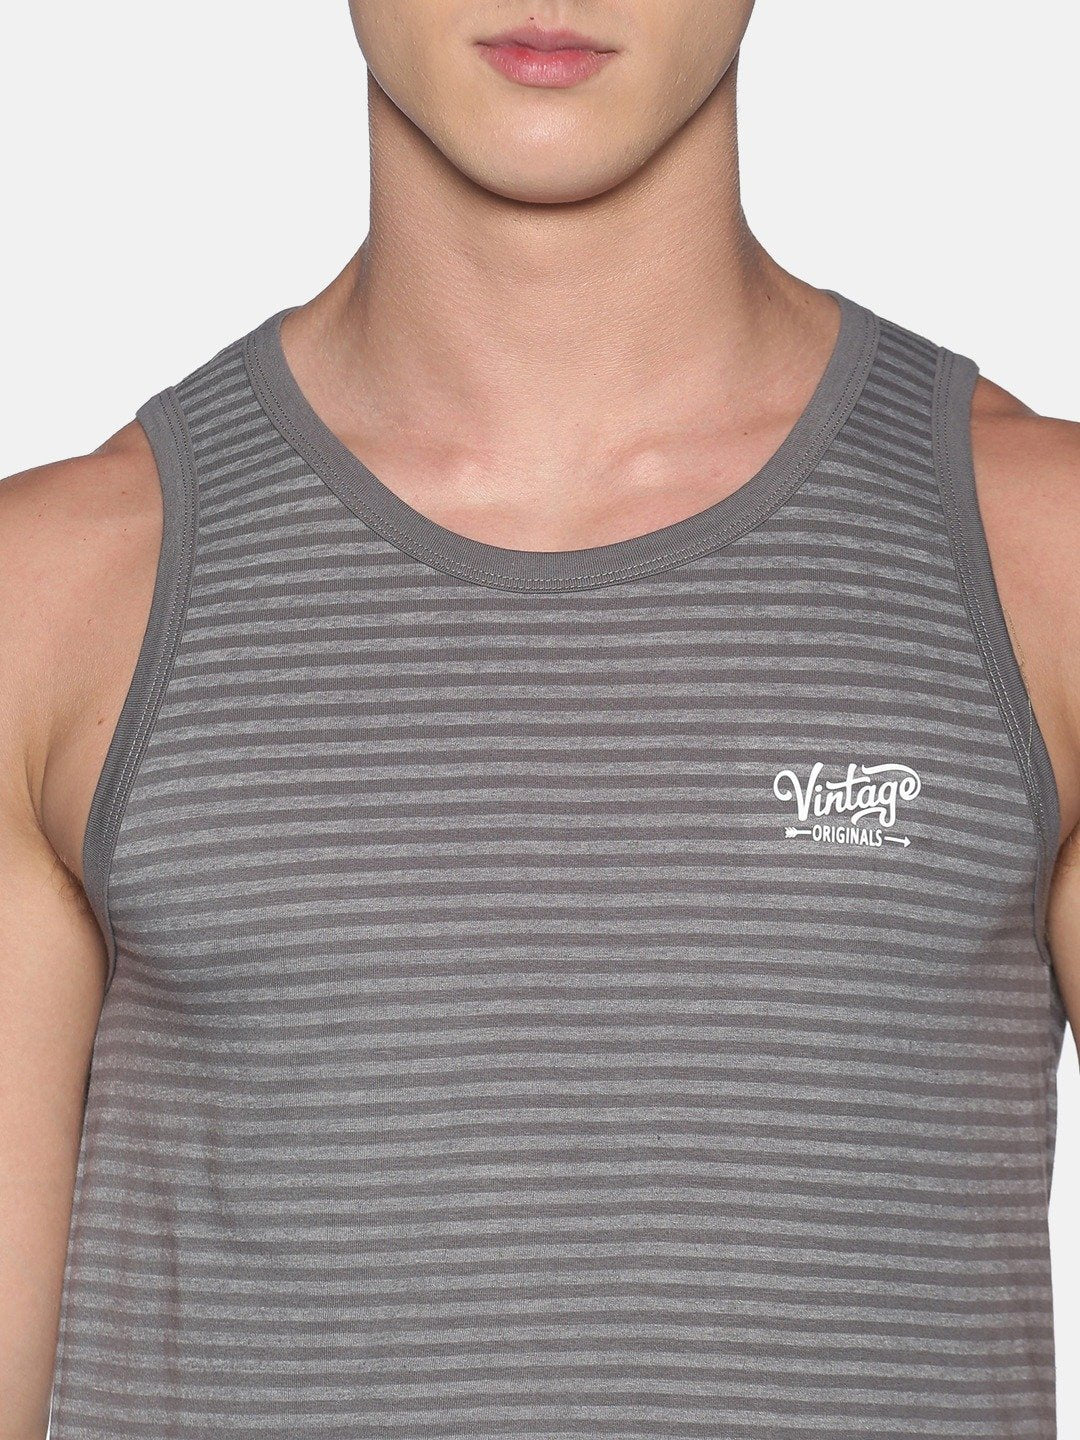 Sleeveless Grey Vest Tank Top for Men - Stilento